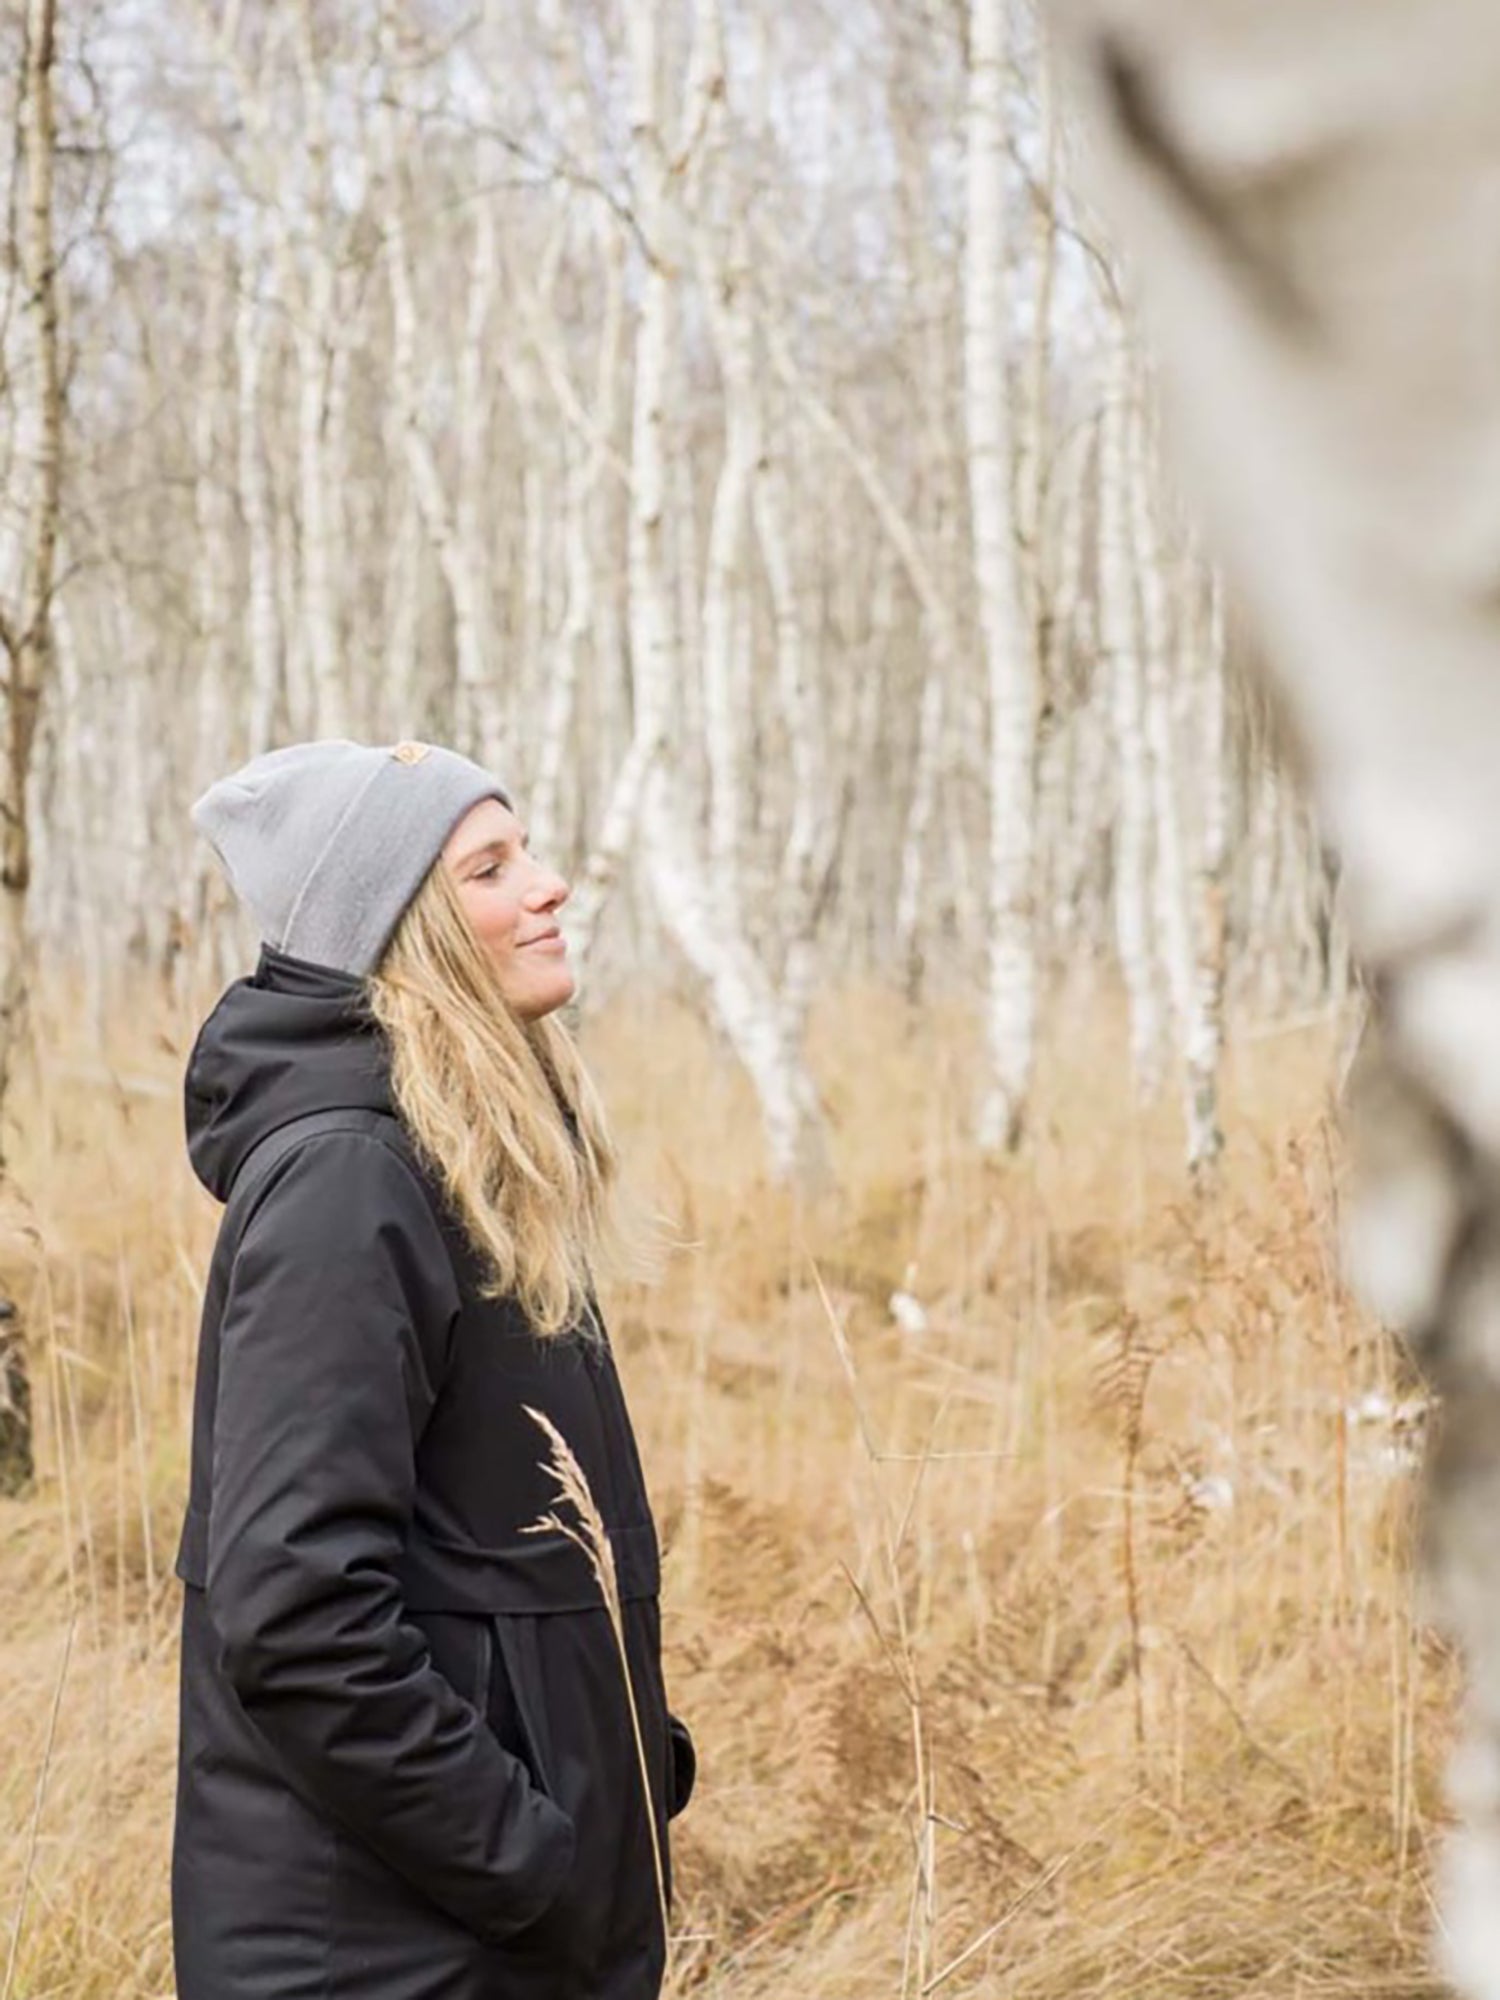 Unsere Freundin Isi trägt unseren Fuxbau Merino Beanie in grau in einem Birkenwald an der Ostsee. Regional in Norddeutschland unter fairen Bedingungen mit Liebe zum Detail gefertigt.